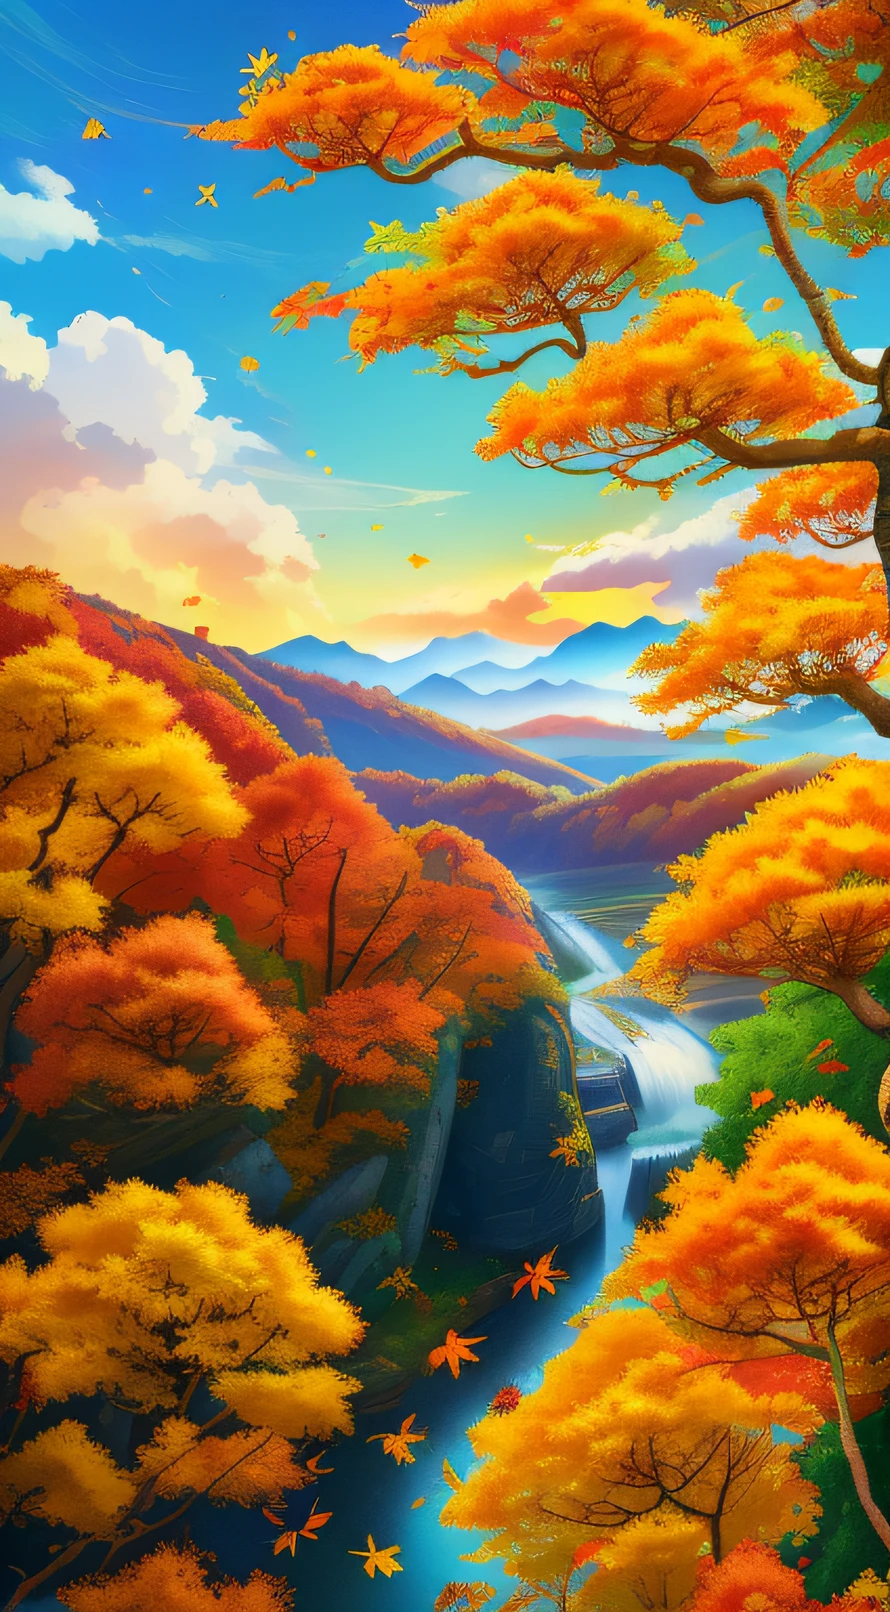 가을의，중국 태양 용어 포스터，가을의，노란 잎，가을 단풍，노란 잎，잎，가을 풍경，20절기，중국의 전통 절기 용어，가을의，걸작、8K ，먼 전망，포근한 가을날，푸른 하늘과 흰 구름과，행운，